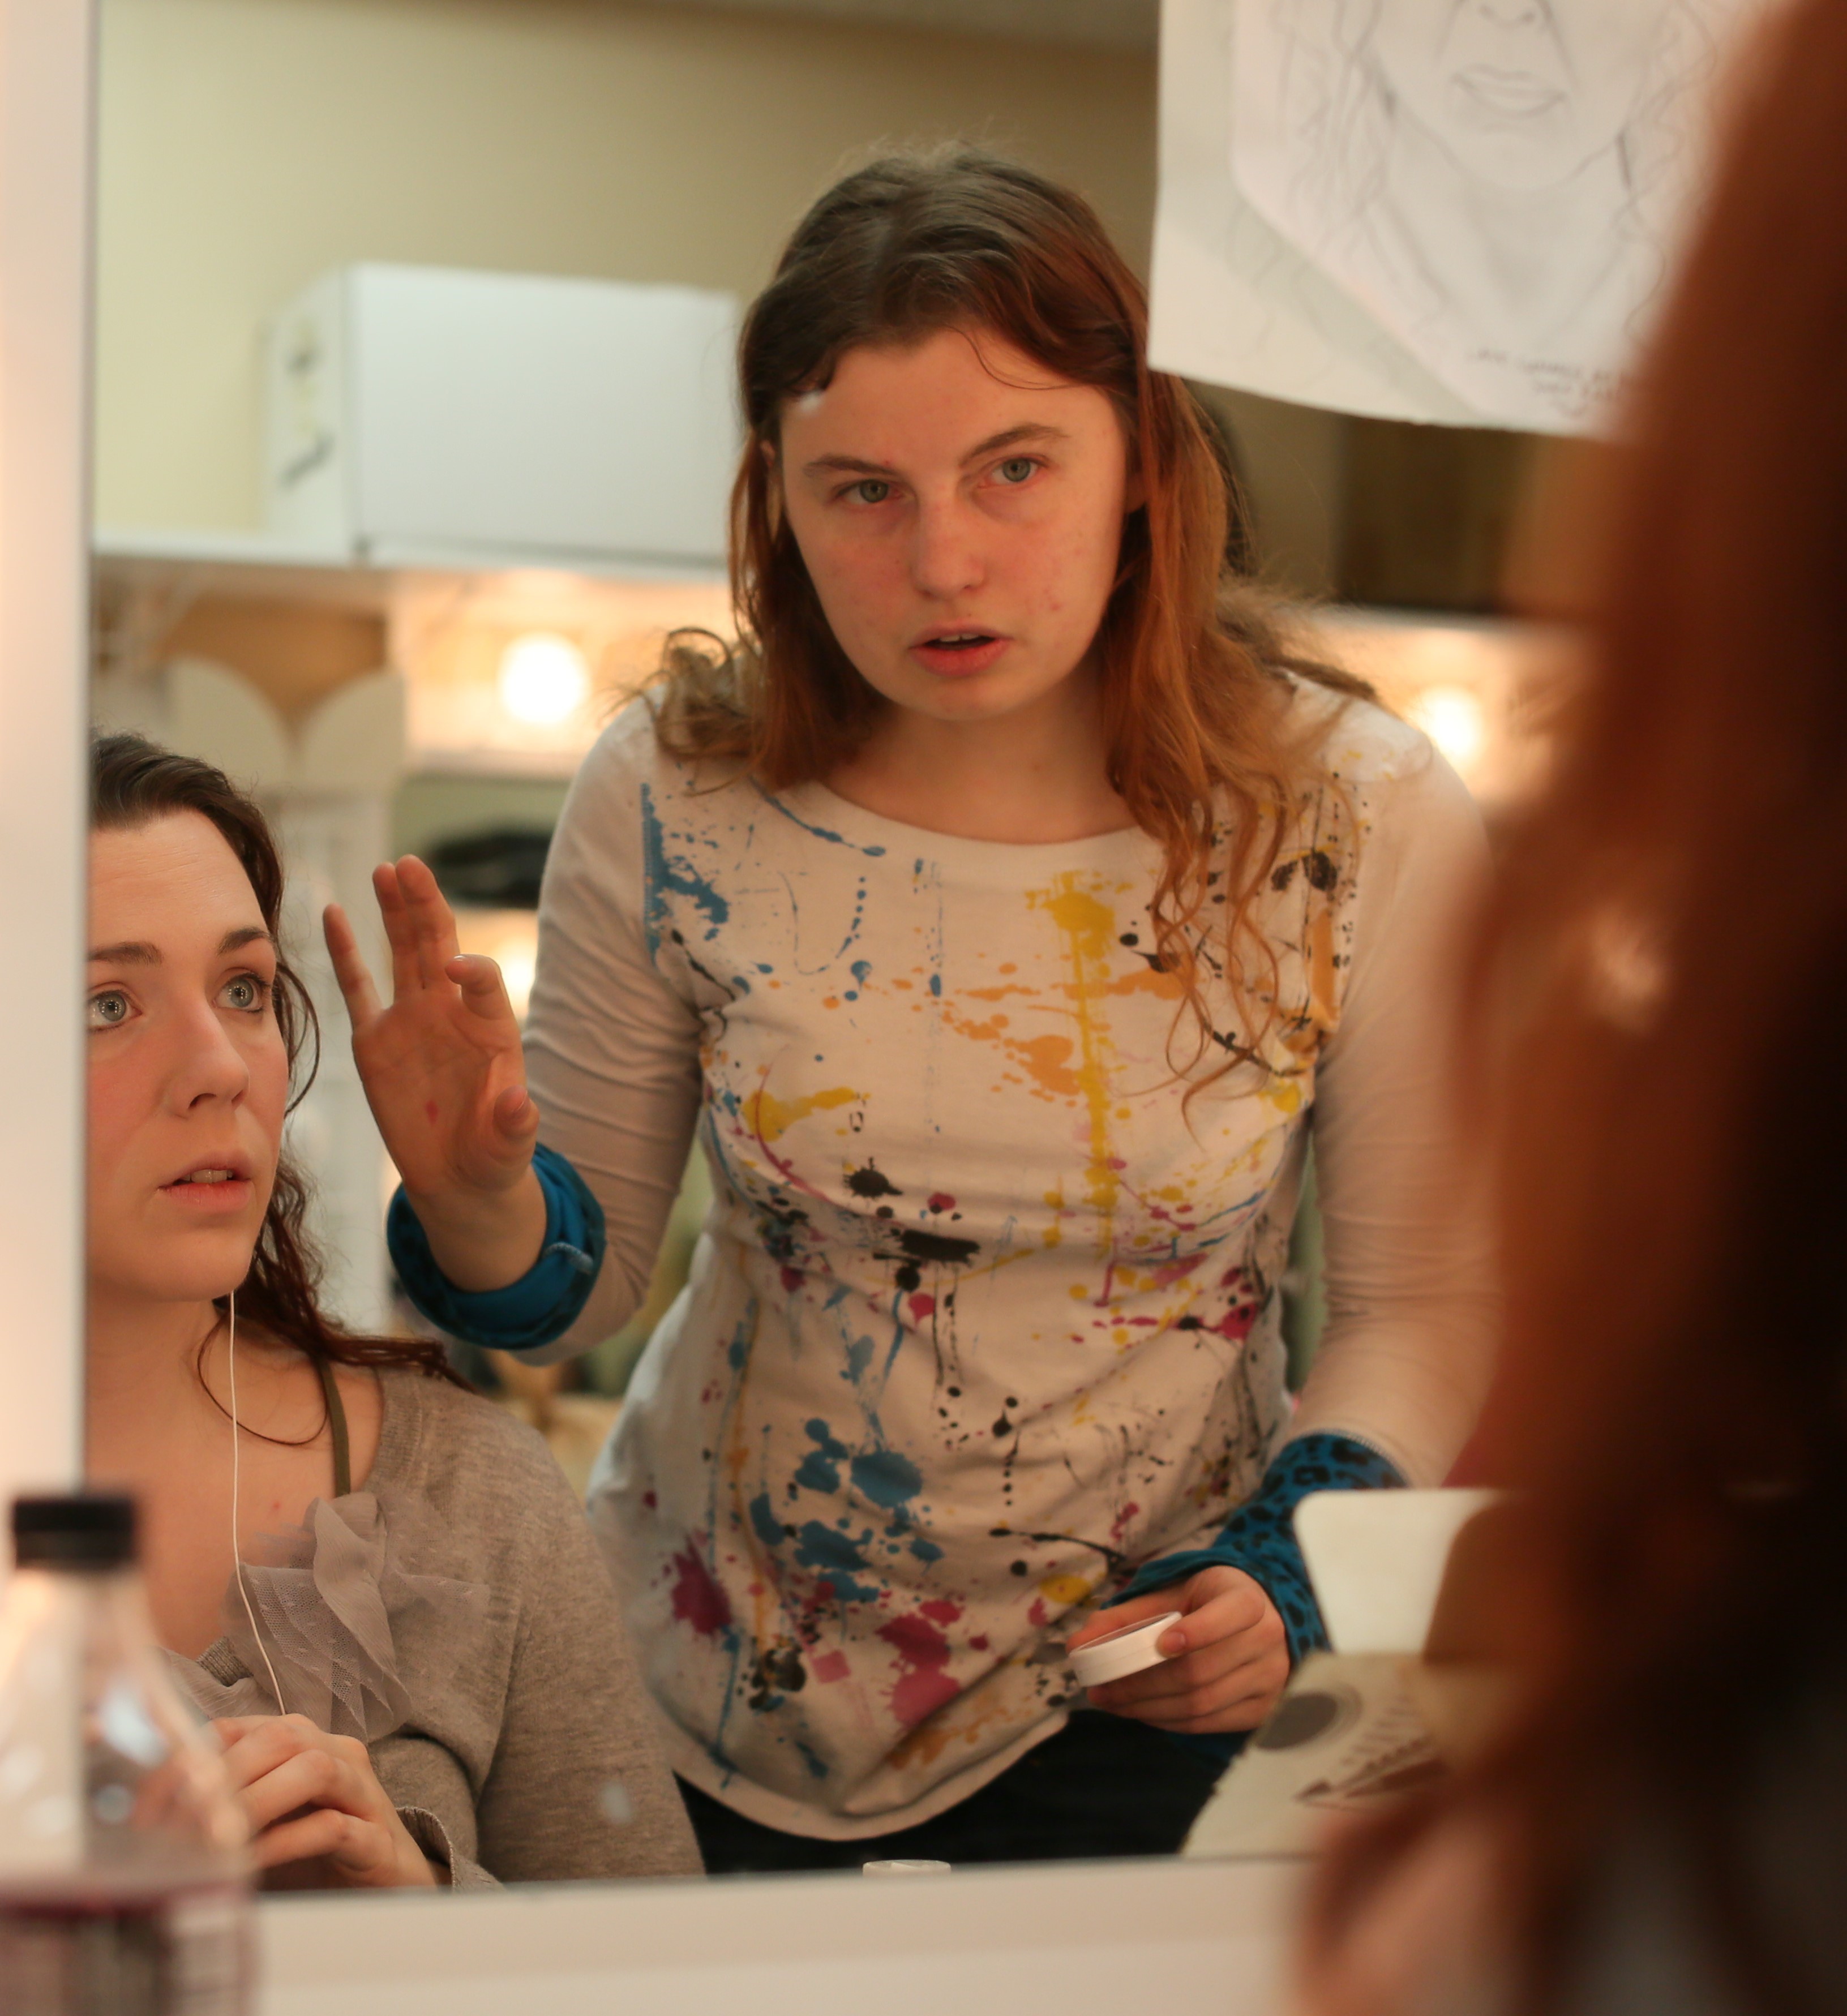 Makeup artist student applying makeup to student actress